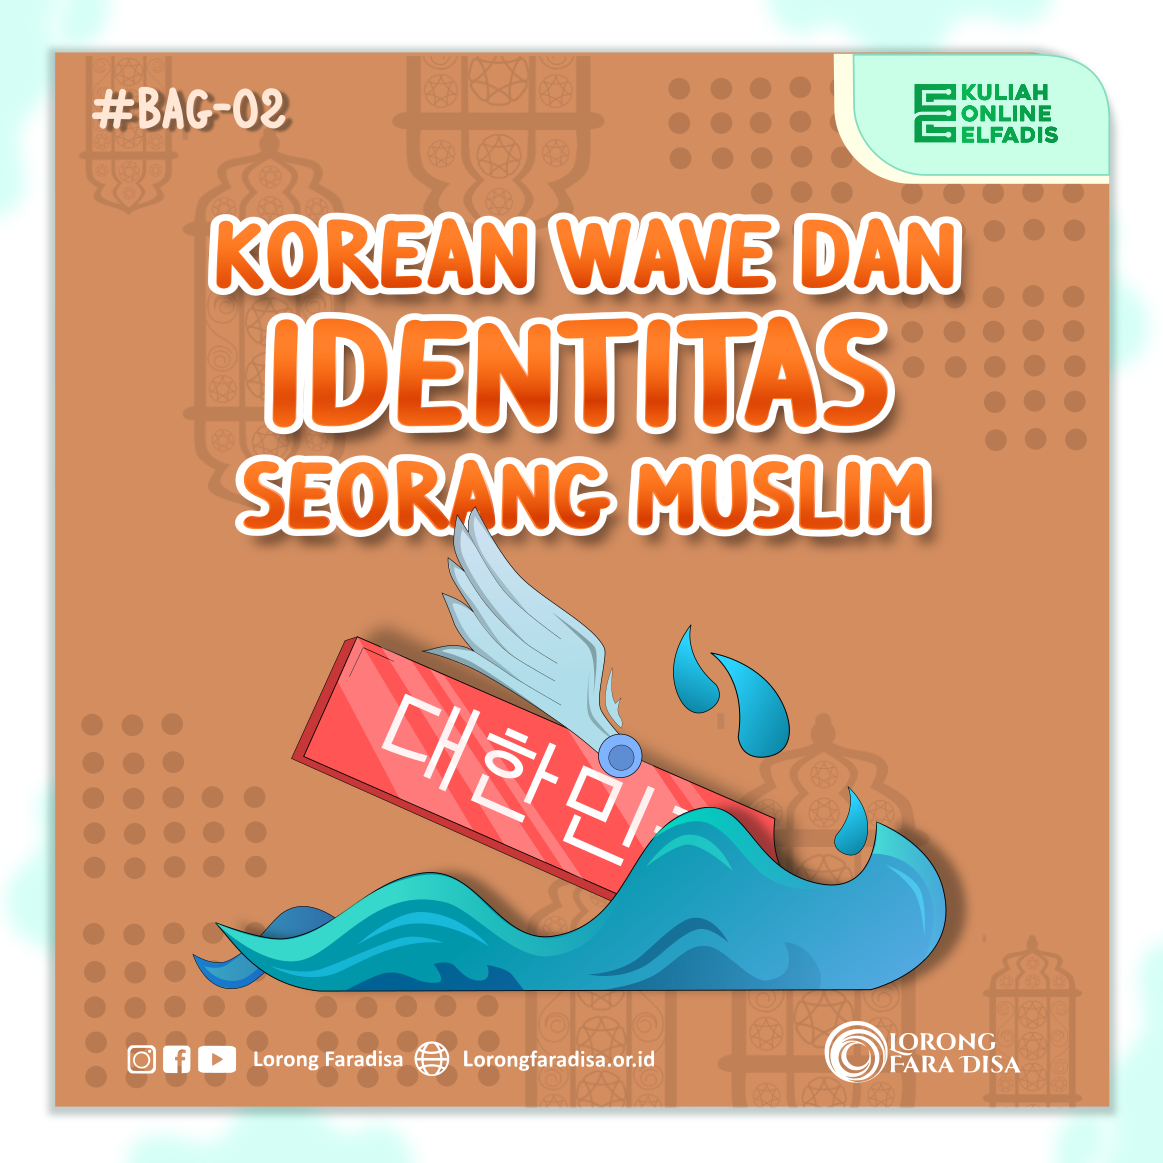 KOREAN WAVE DAN IDENTITAS SEORANG MUSLIM (PART 2)